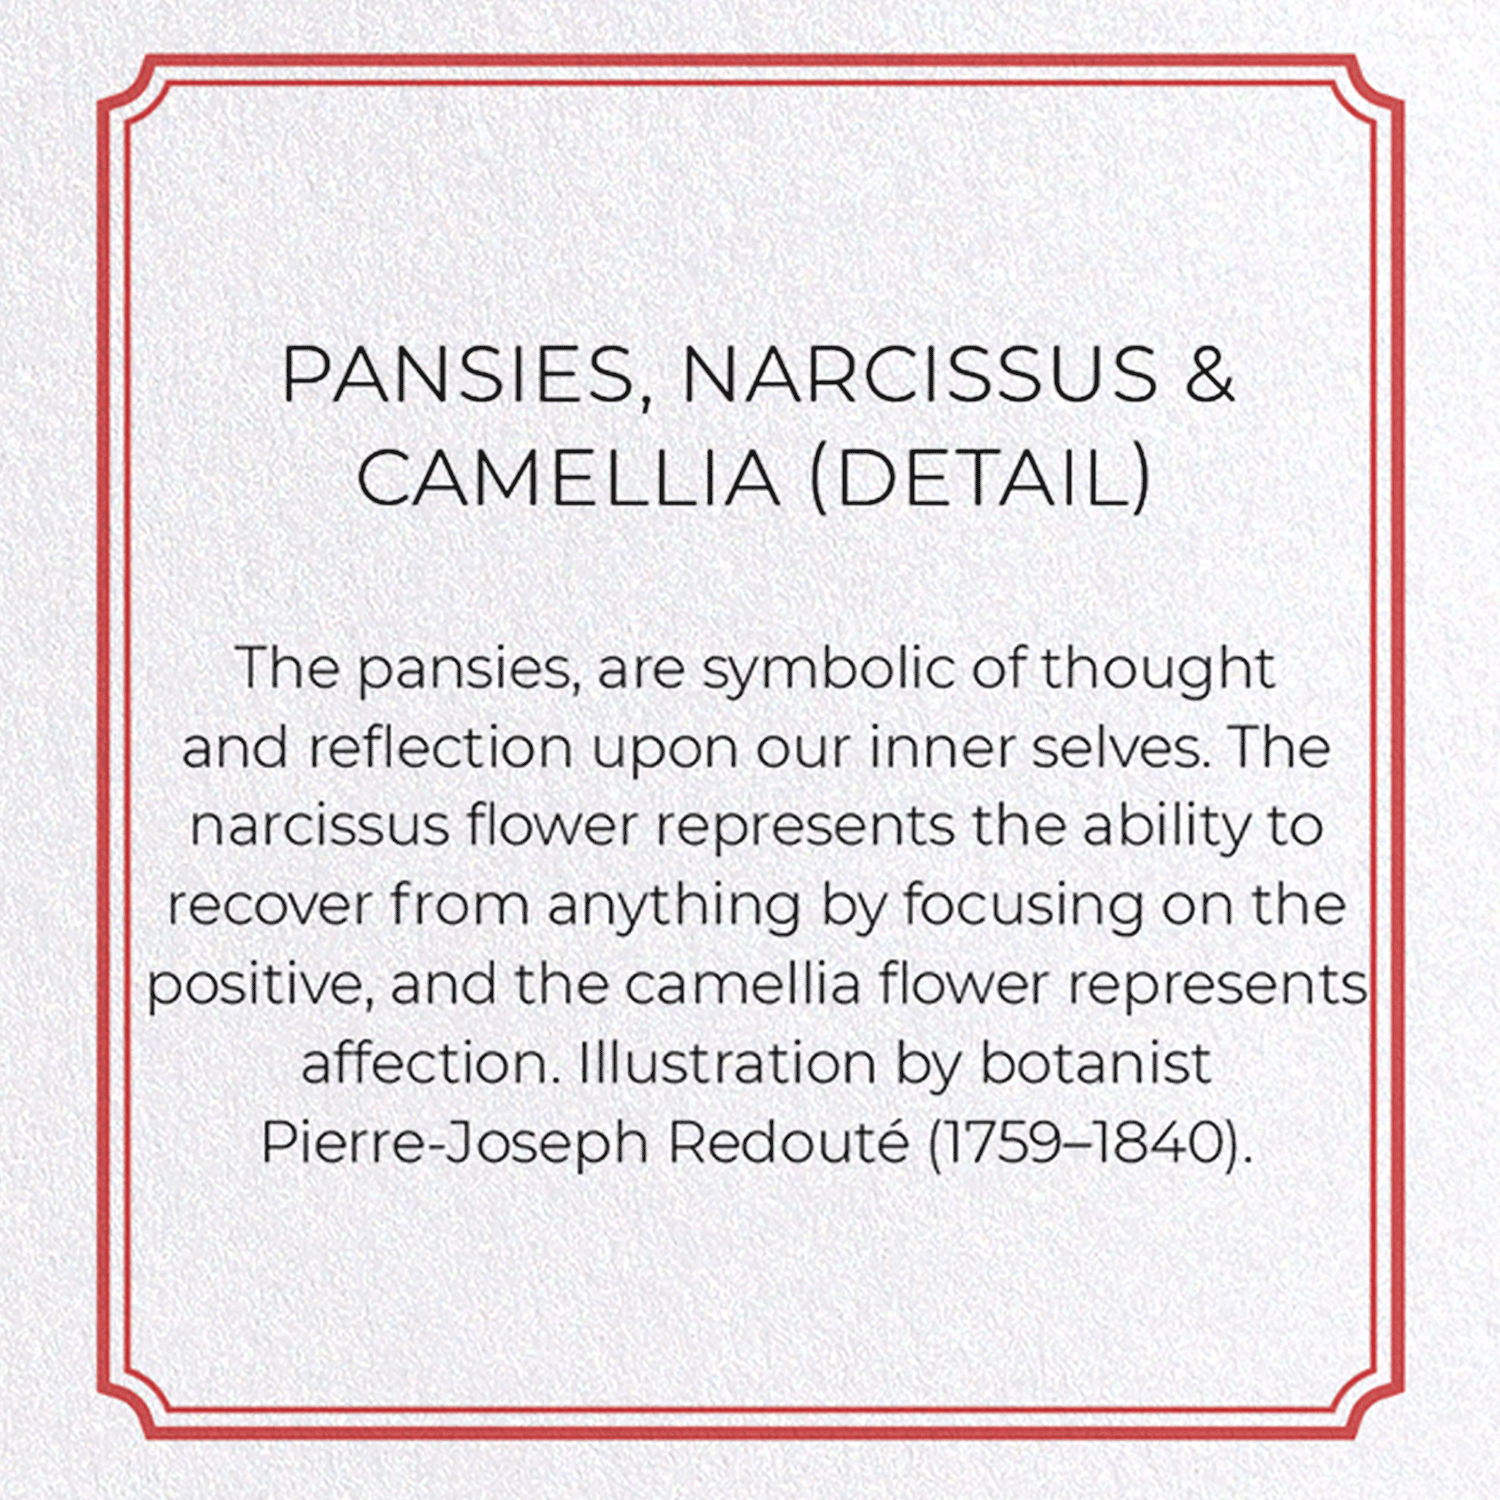 PANSIES, NARCISSUS & CAMELLIA